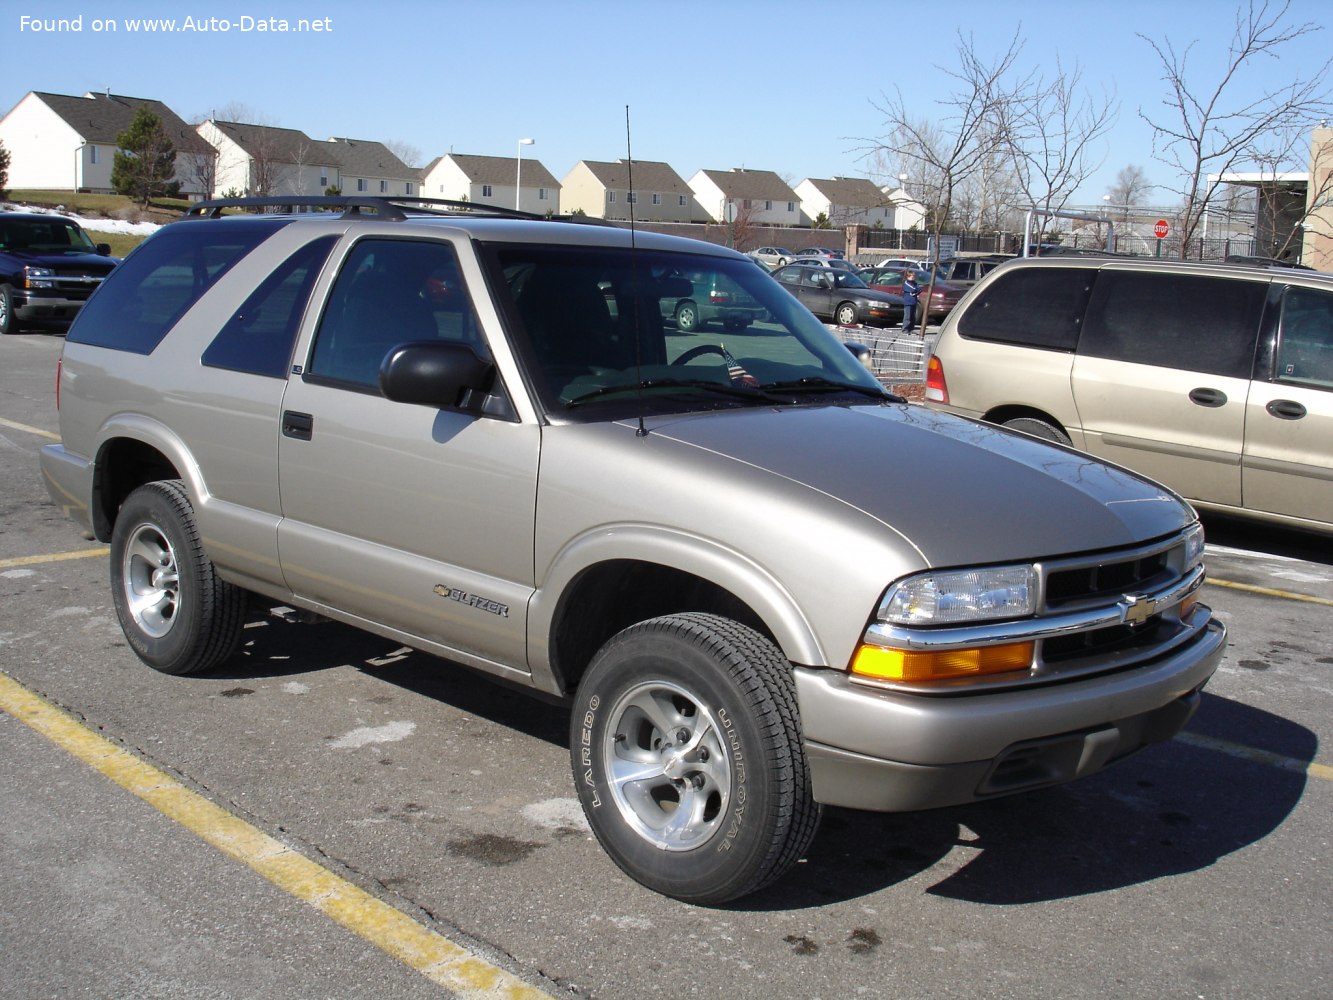 1998 Chevrolet Blazer II (2door, facelift 1998) 4.3 V6